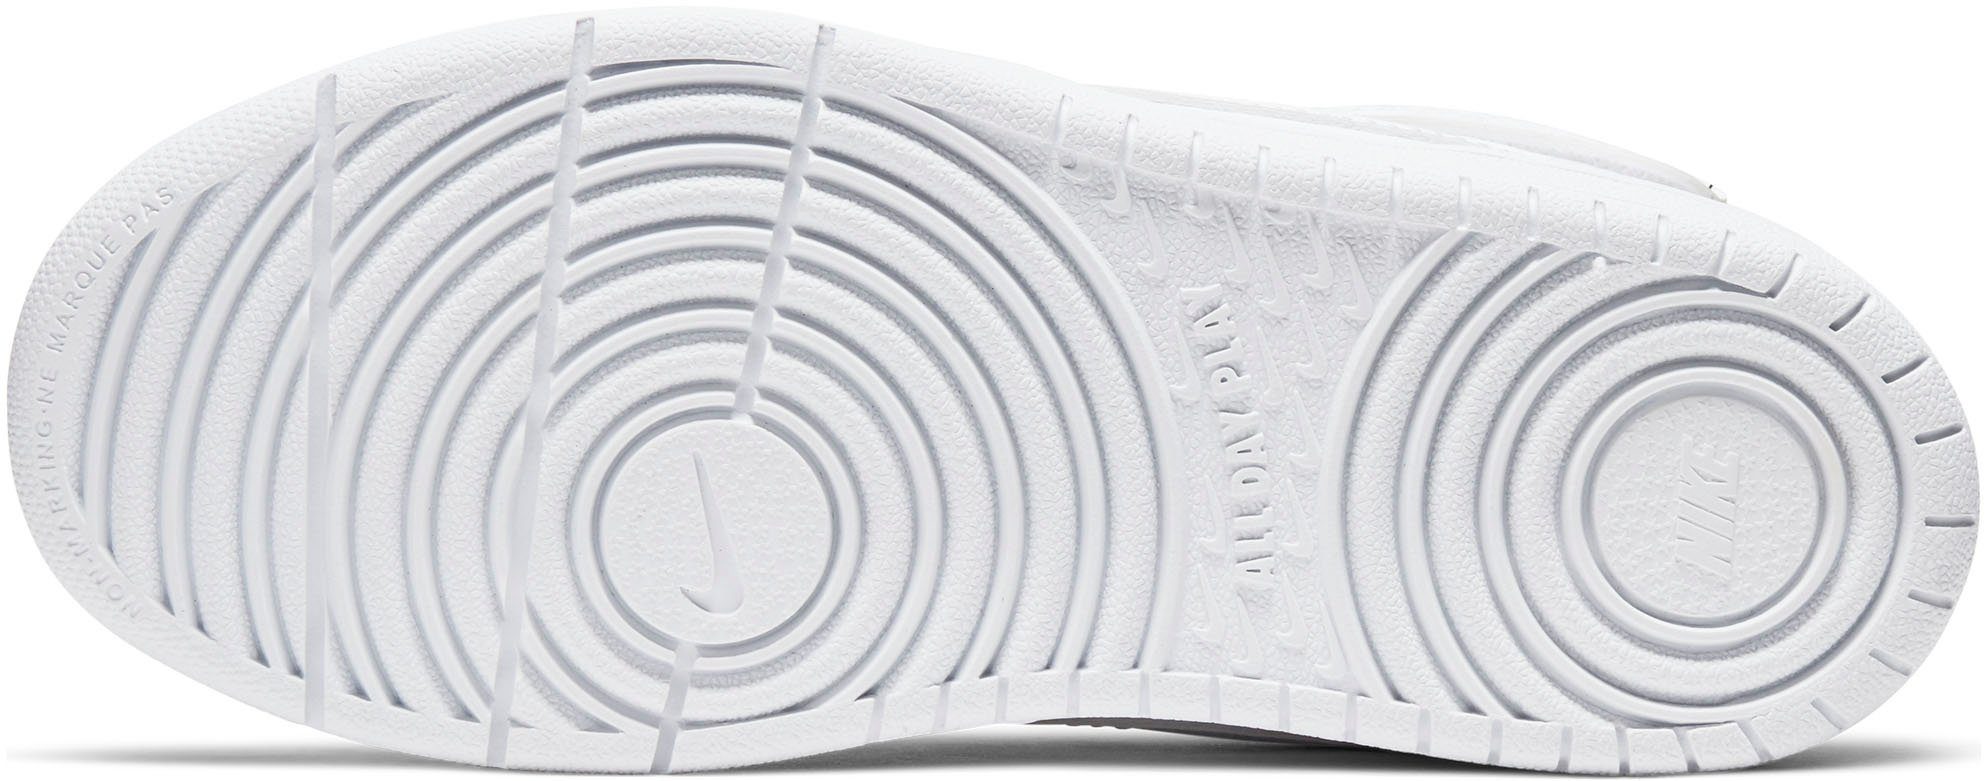 BOROUGH den Nike Sportswear COURT auf Design Sneaker 1 des Force MID Air 2 Spuren